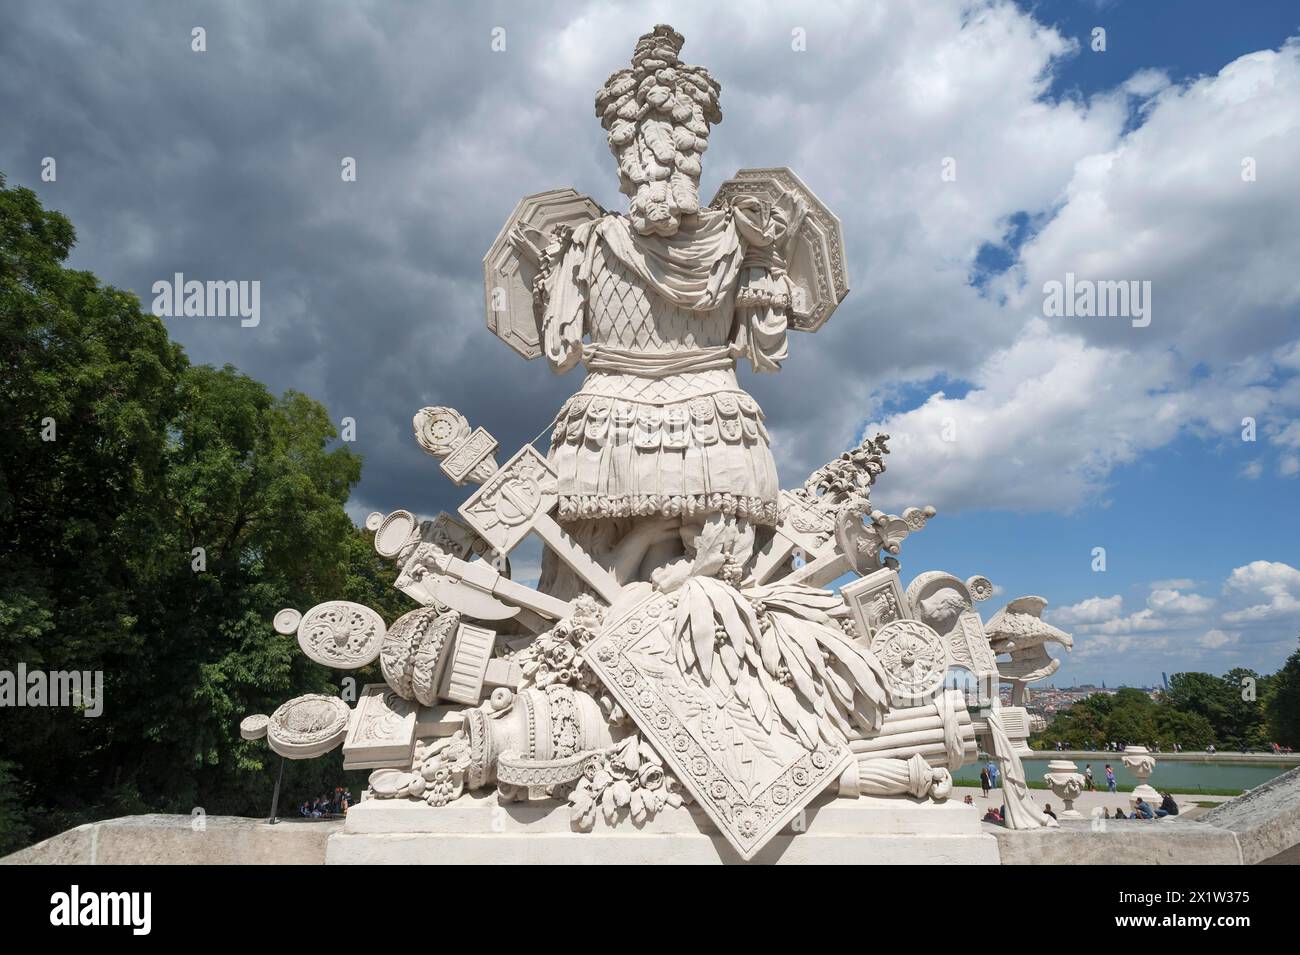 Symboles anciens tels que armures, boucliers, panneaux de terrain, devant l'escalier de la Gloriette, construit en 1775, Schoenbrunn Palace Park Banque D'Images